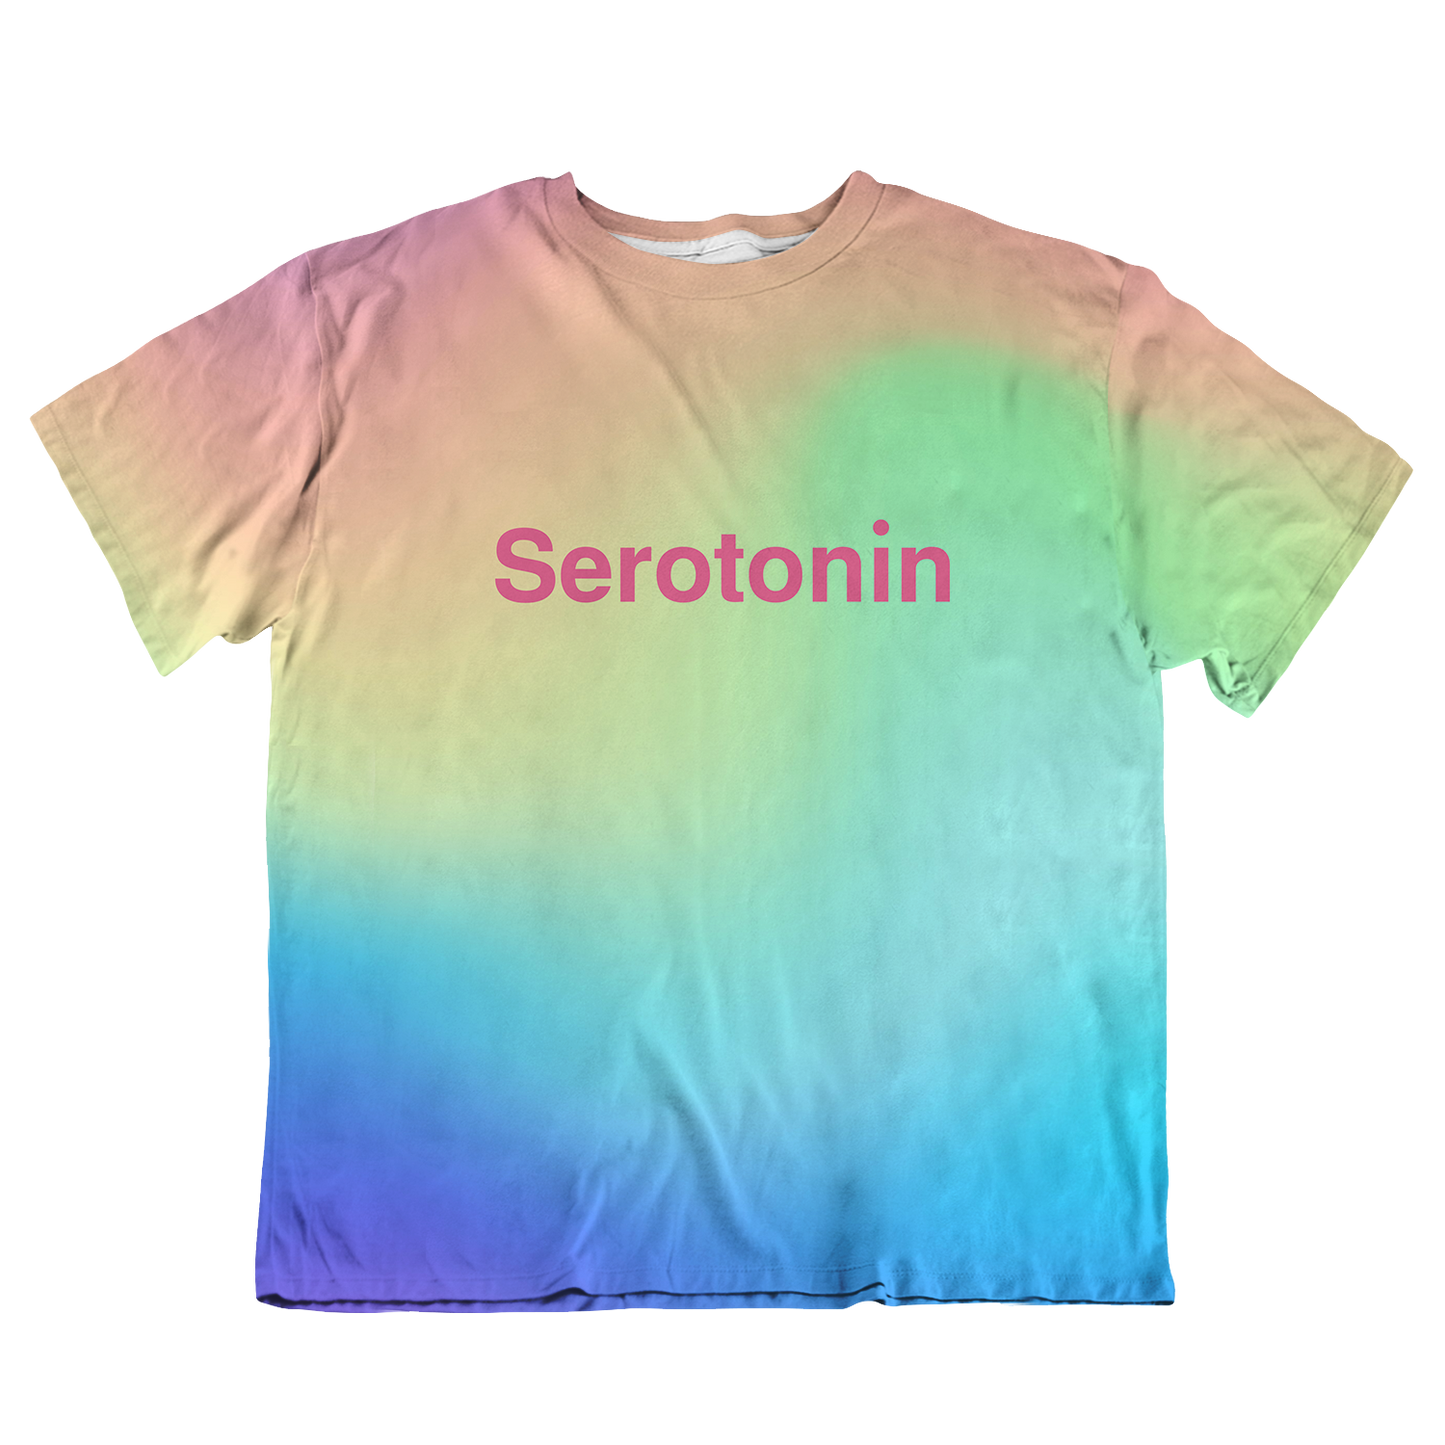 Serotonin All Over Print Oversized Tee